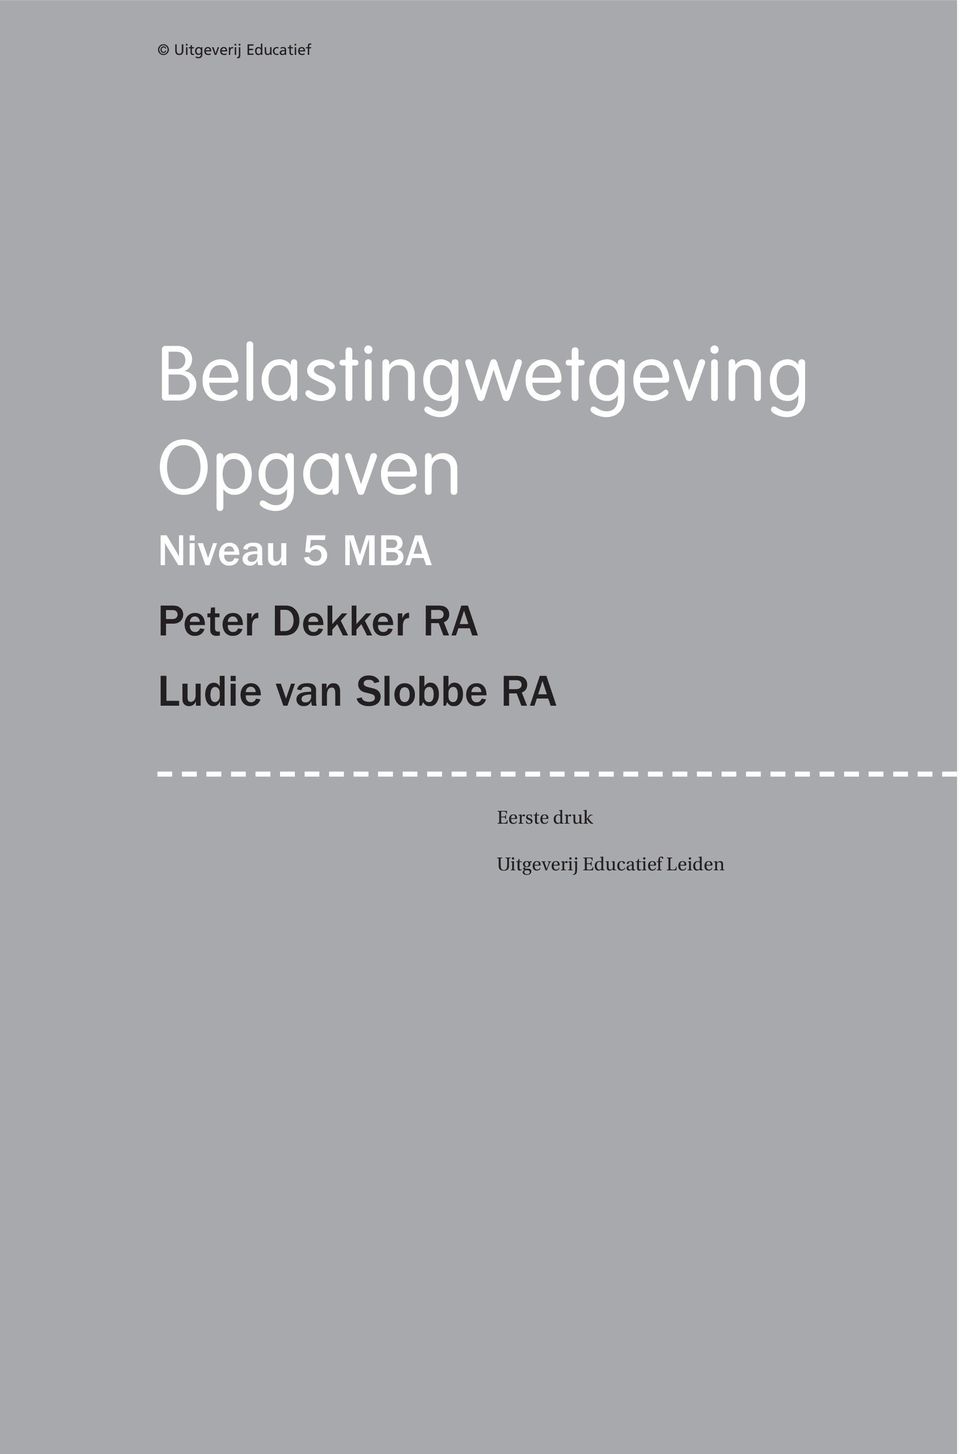 5 MBA Peter Dekker RA Ludie van